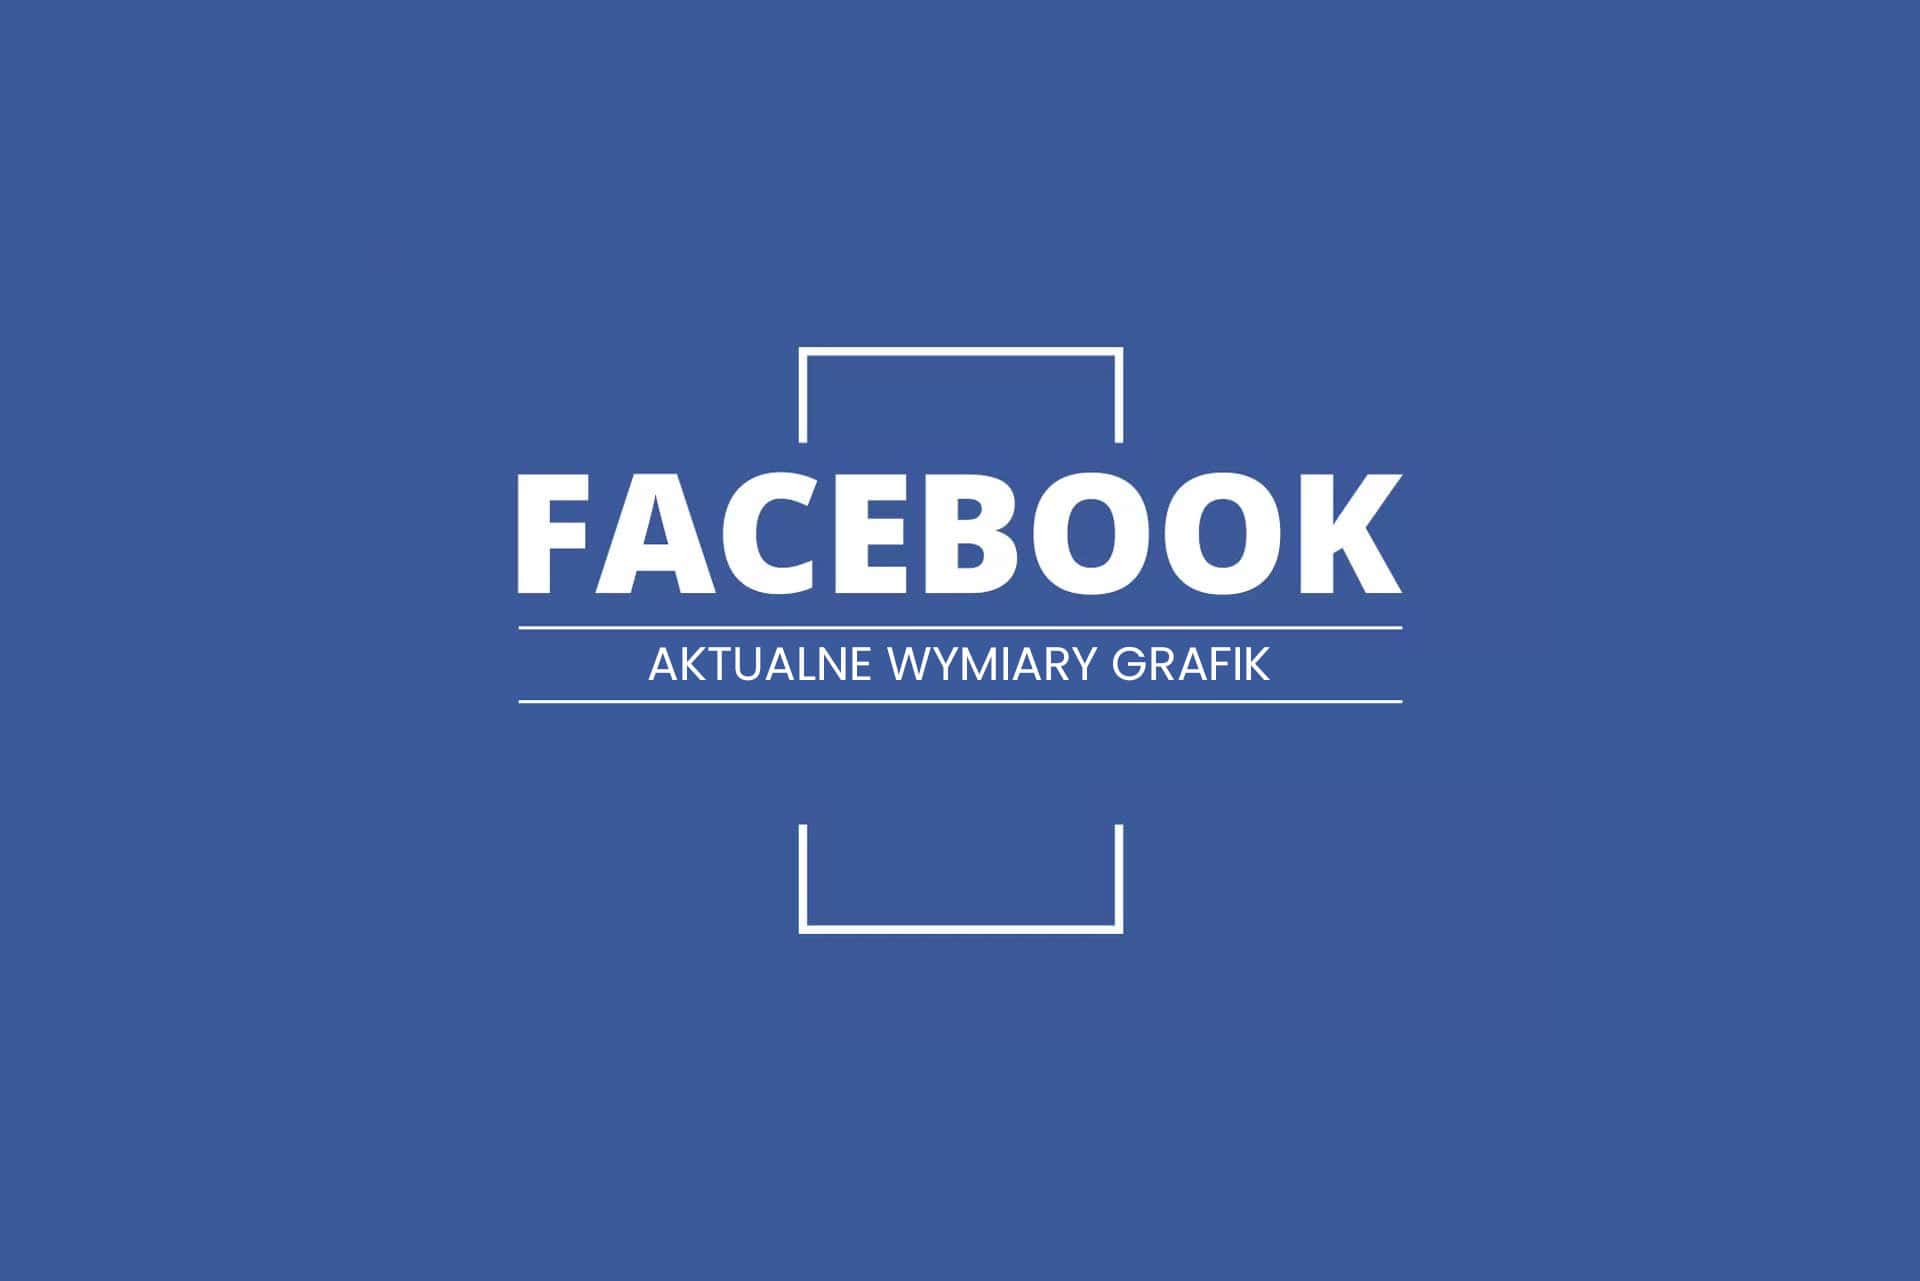 Aktualne wymiary grafik na Facebooku (FB)